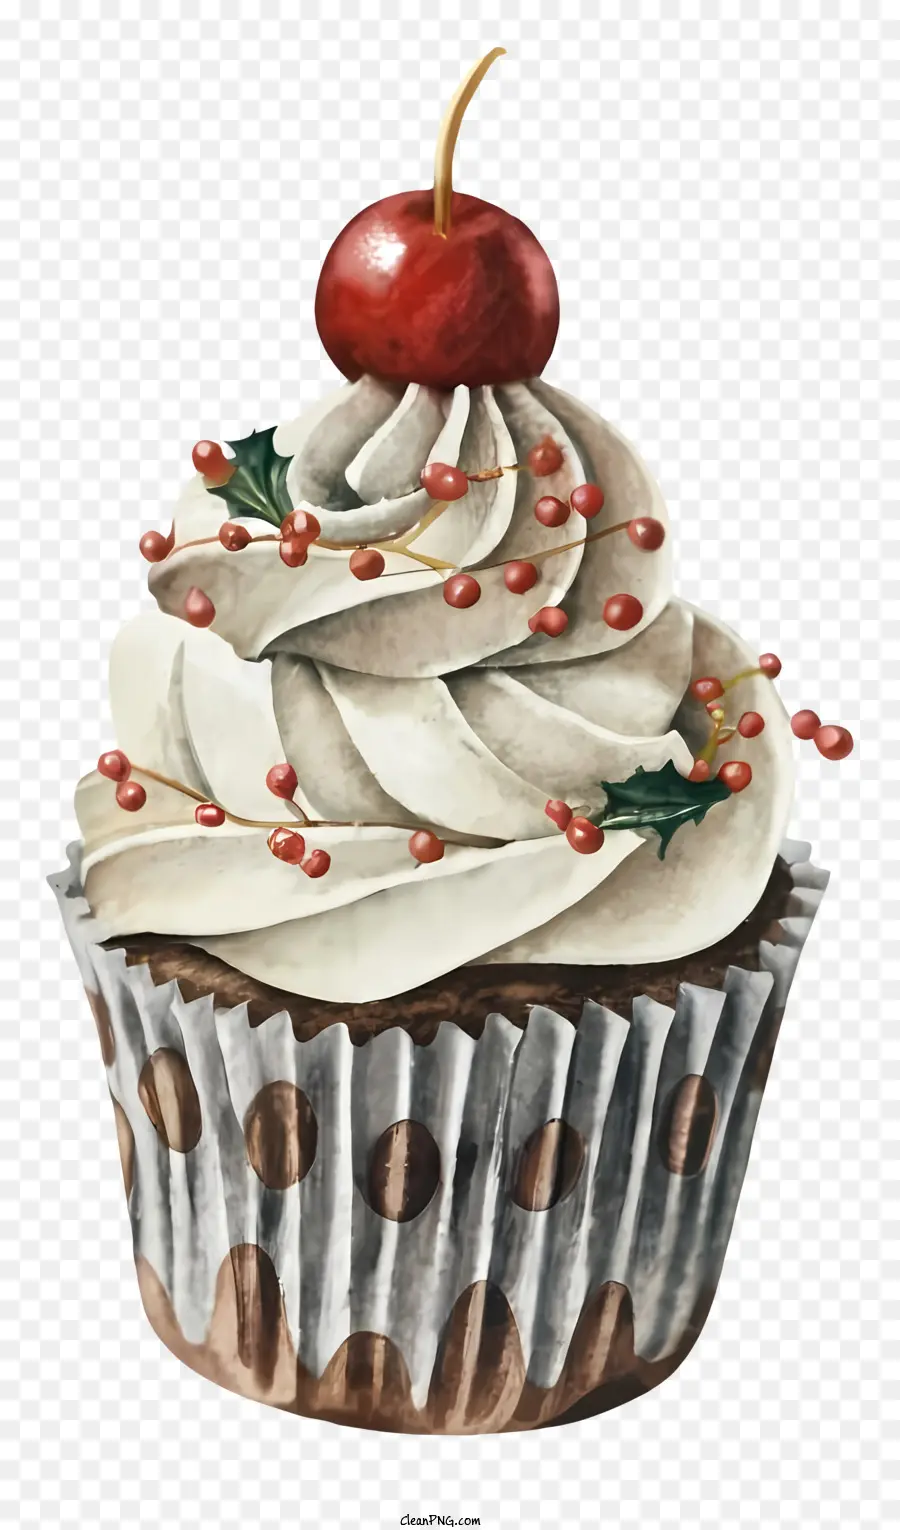 Cupcake Cream Frosting Red Cherry Polka chấm nền tối - Cupcake ẩm với các chấm anh đào và polka